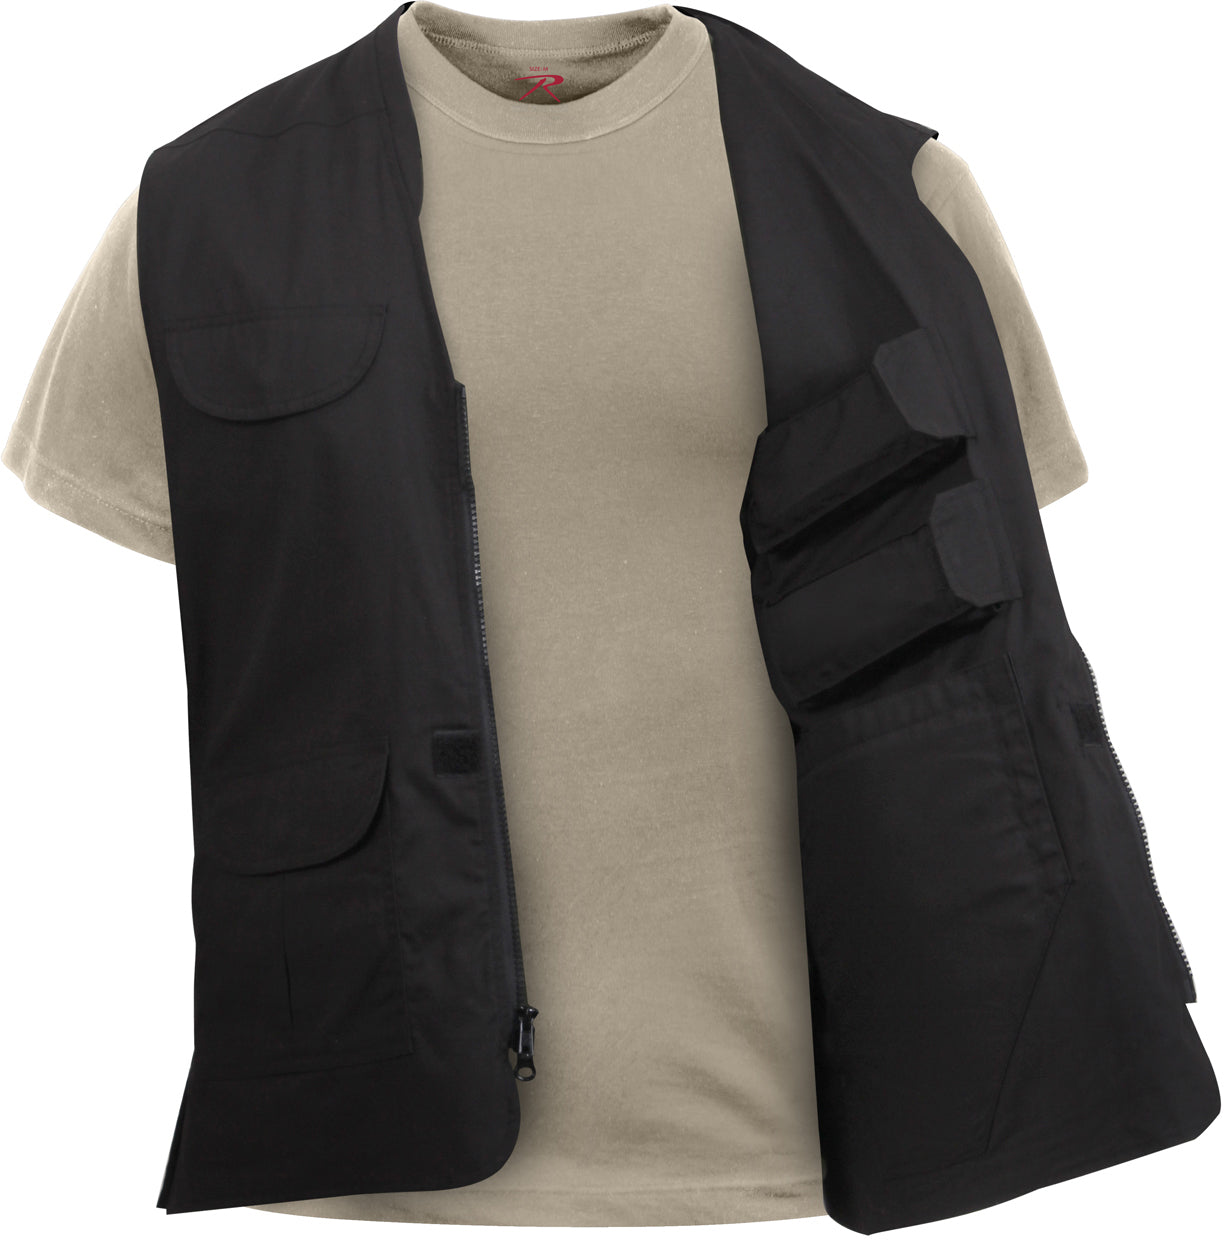 Black Lightweight Professional Concealed Carry Vest